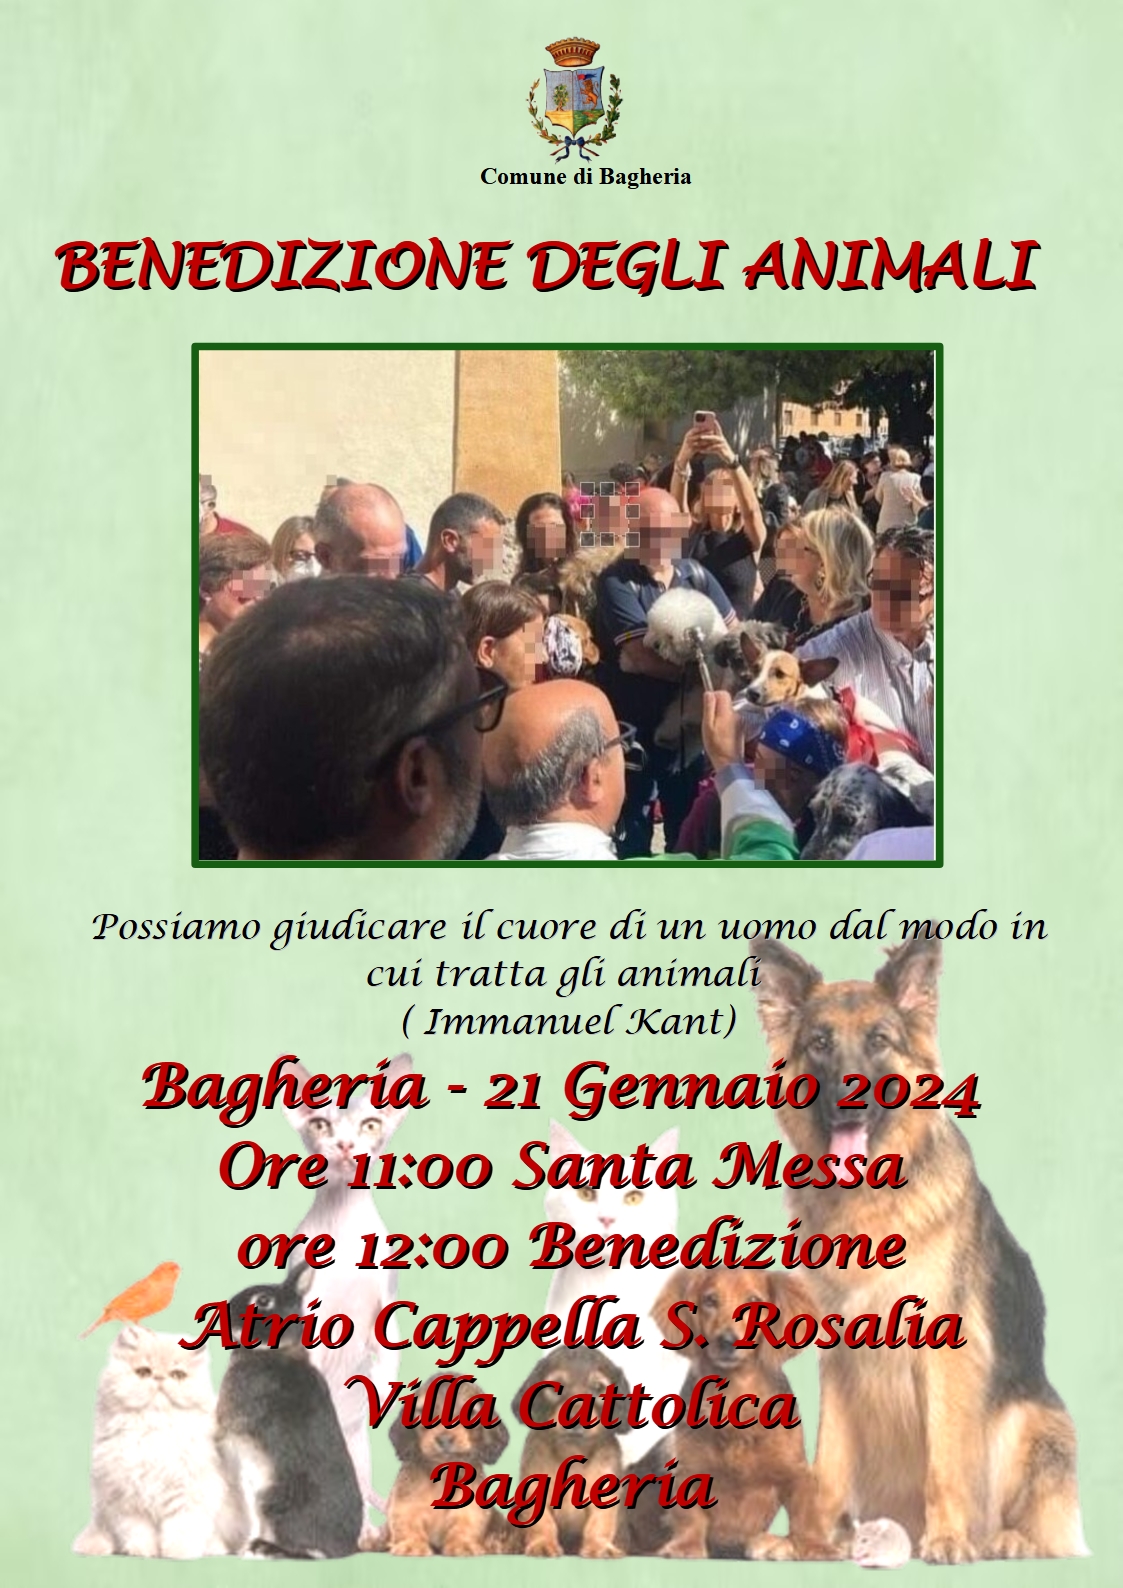 Domenica 21 gennaio a villa Cattolica la benedizione degli animali